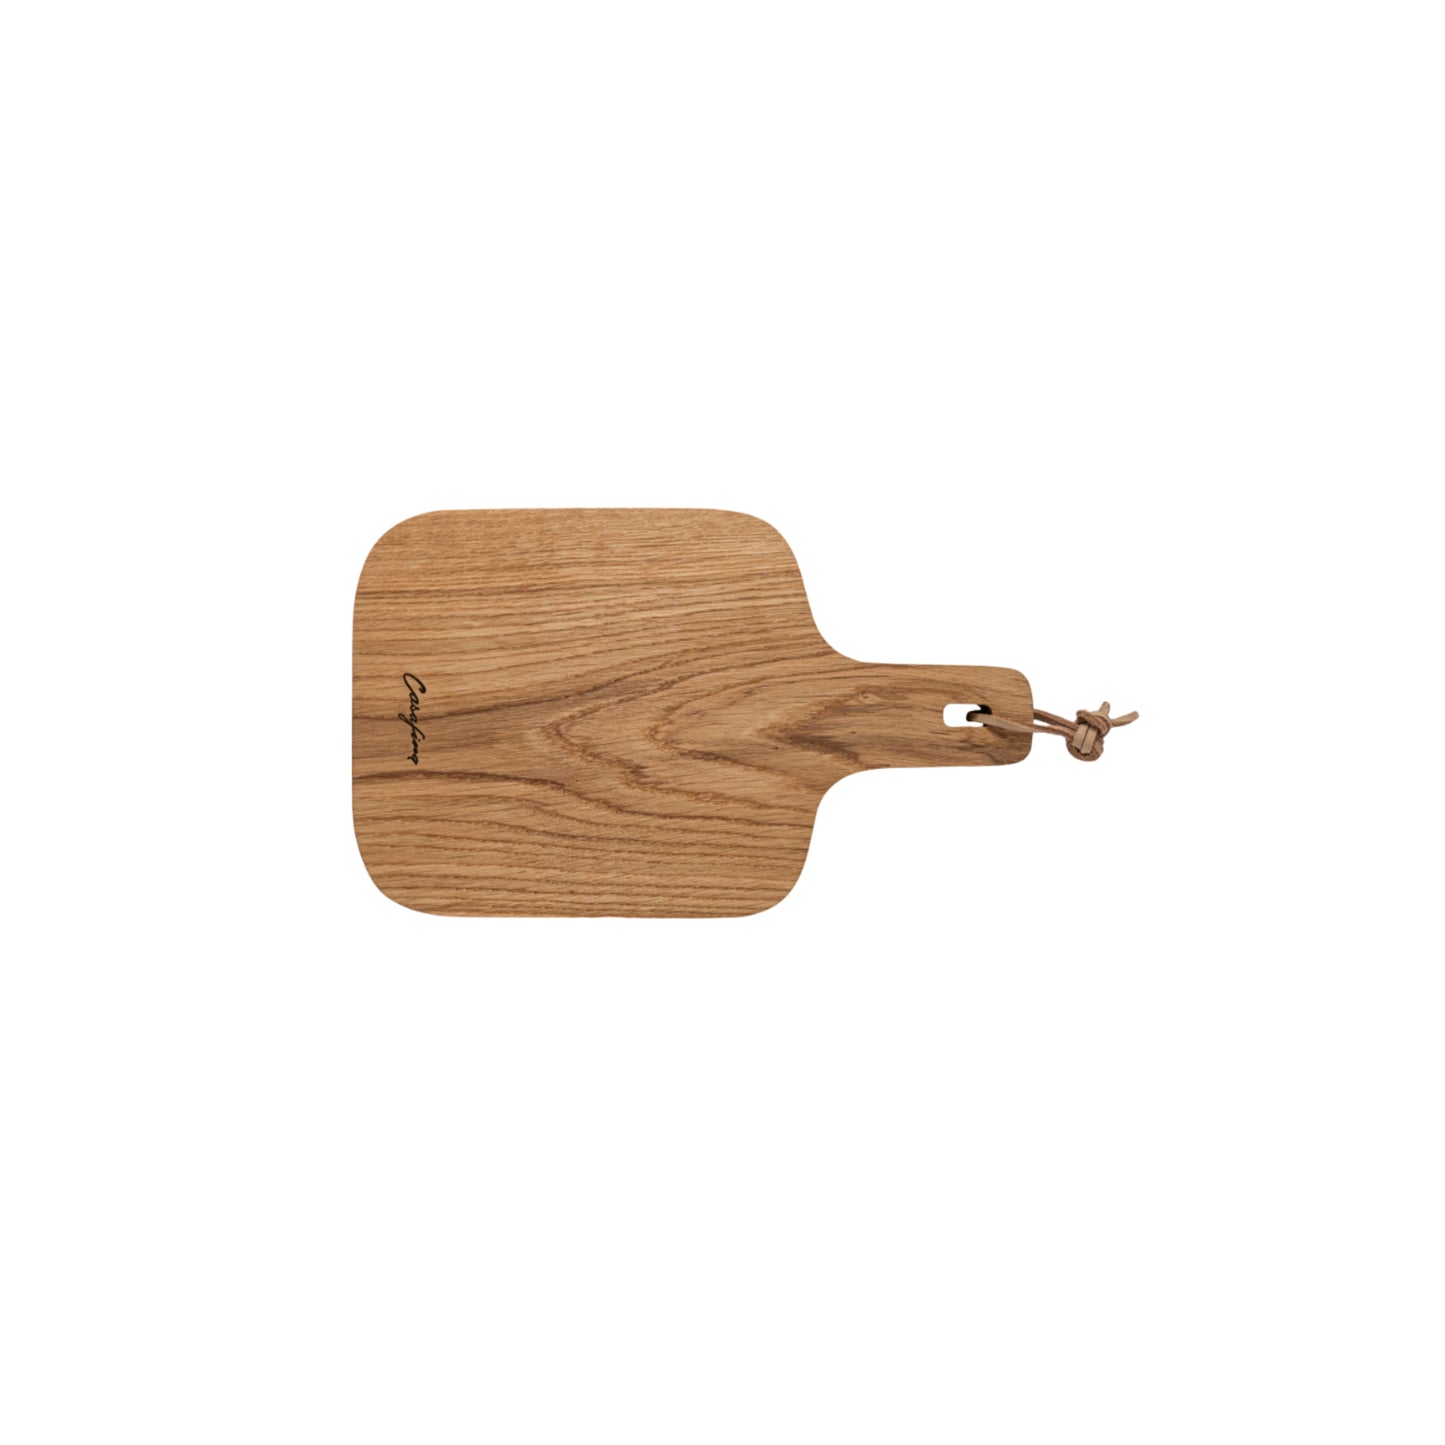 Oak Cutting Board (12”)